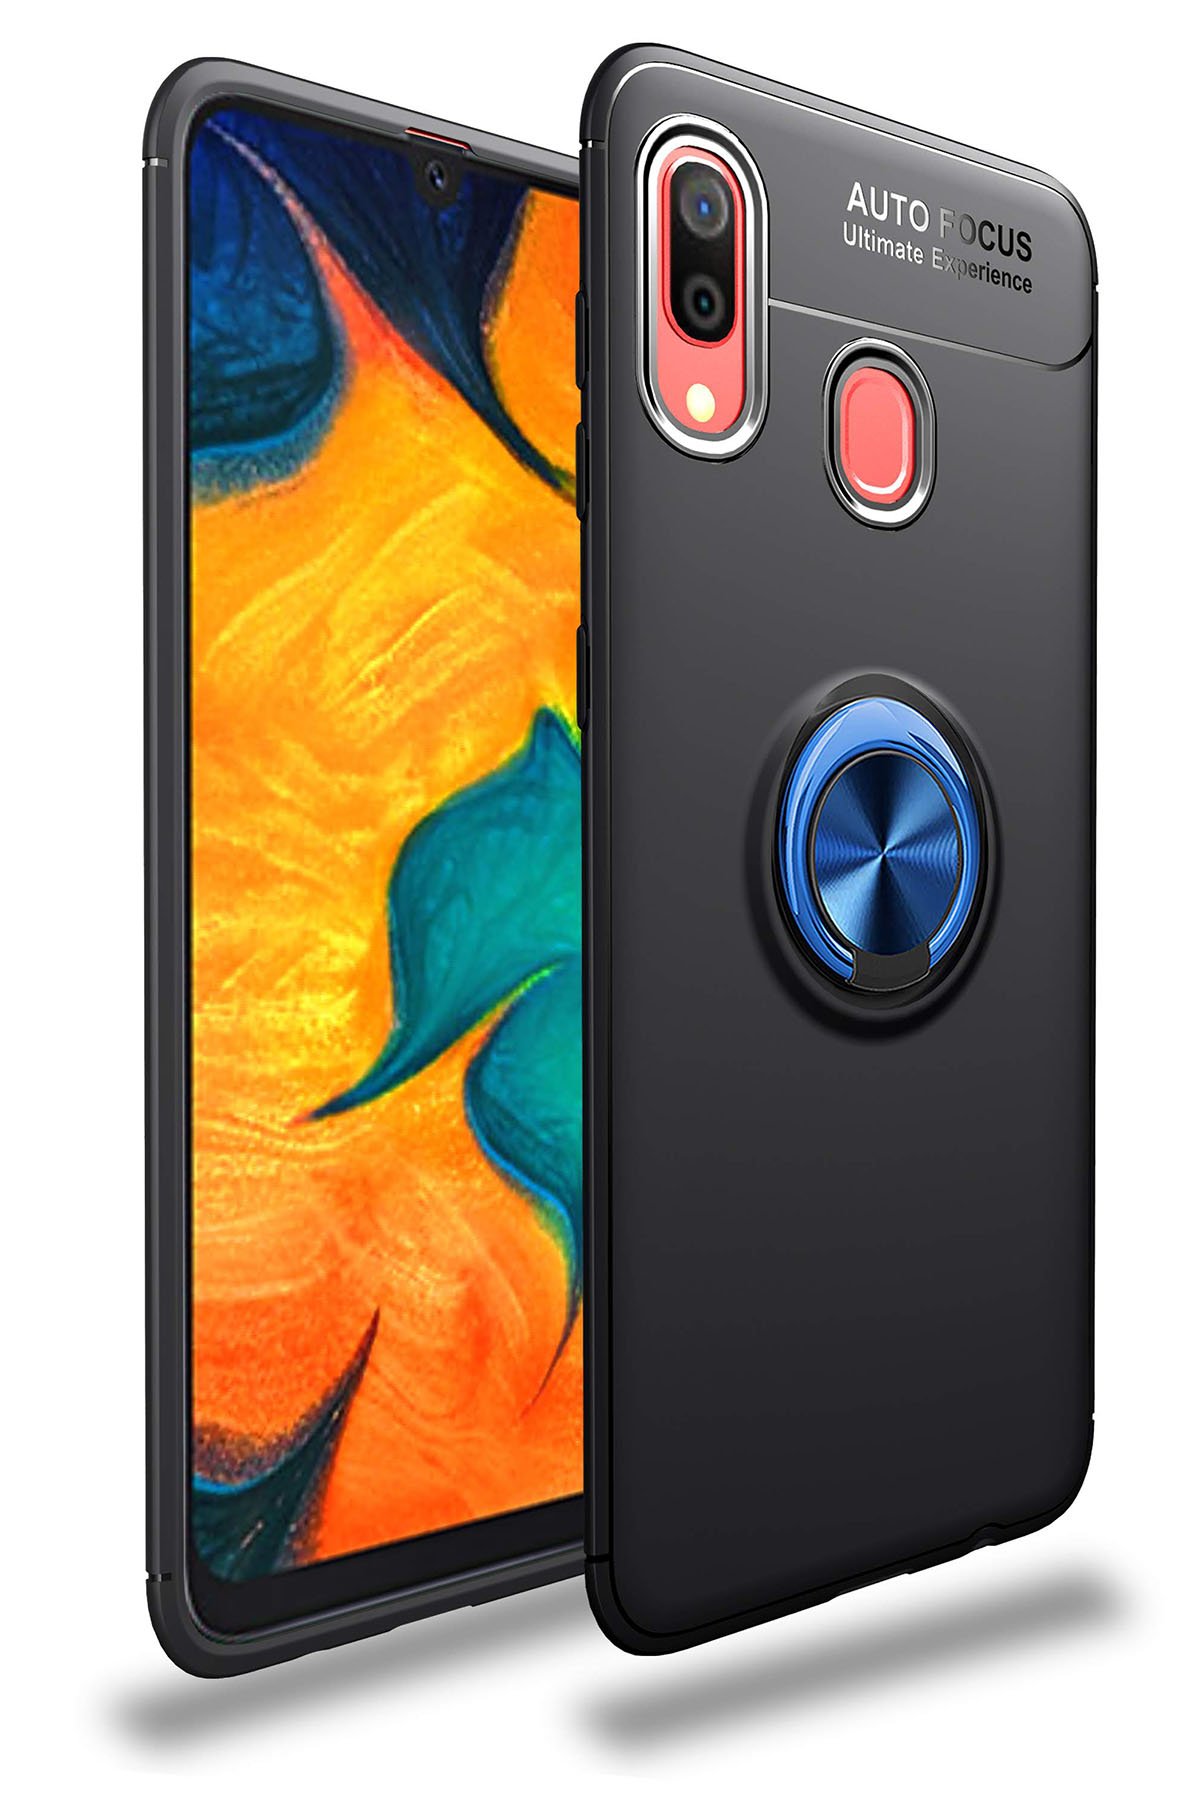 Newface Samsung Galaxy A20 Kılıf Lüx Çift Renkli Silikon - Sarı